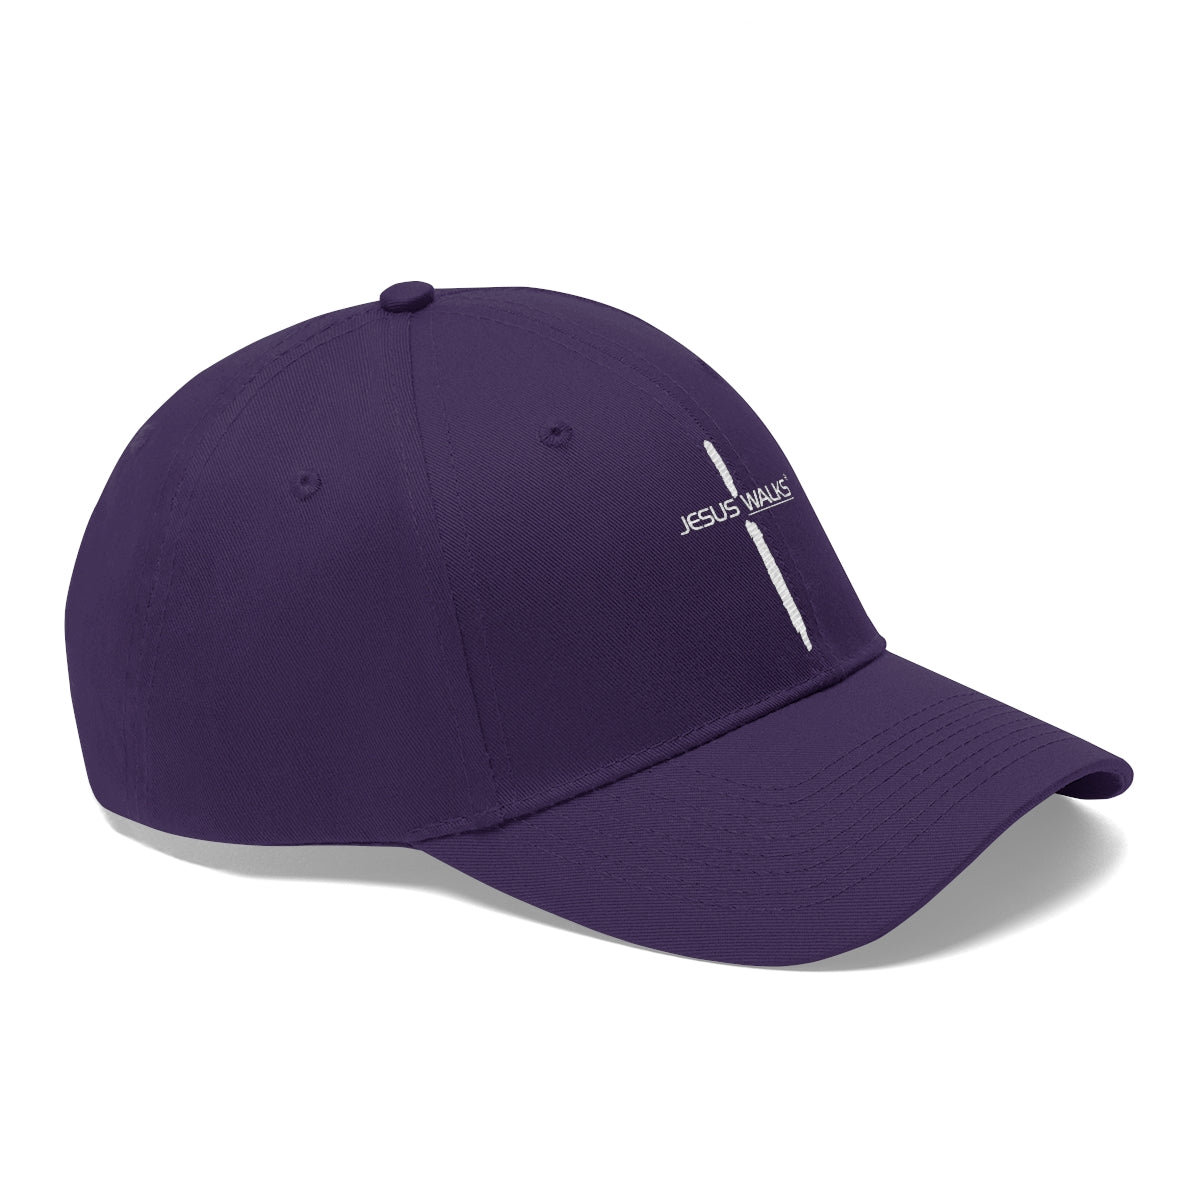 Jesus Walks Unisex Cross Twill Hat